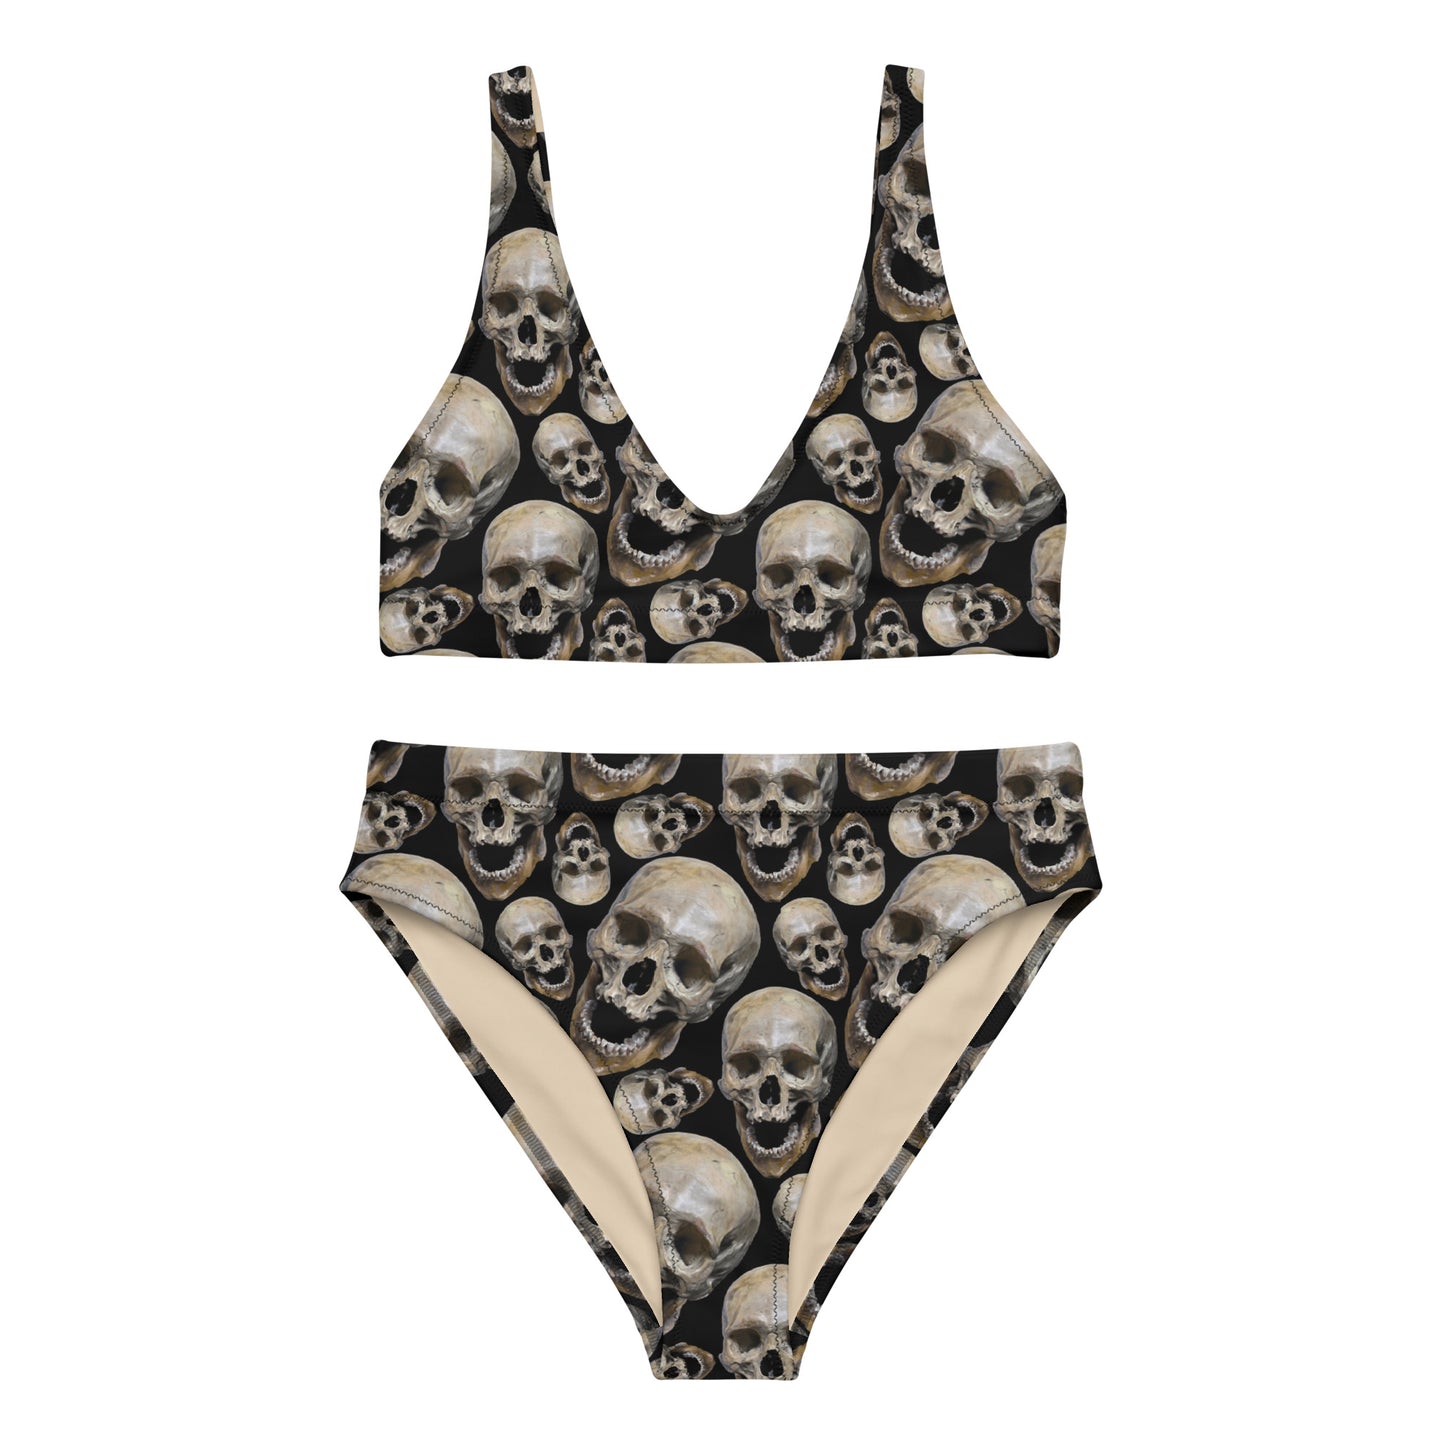 Skull high-waisted bikini